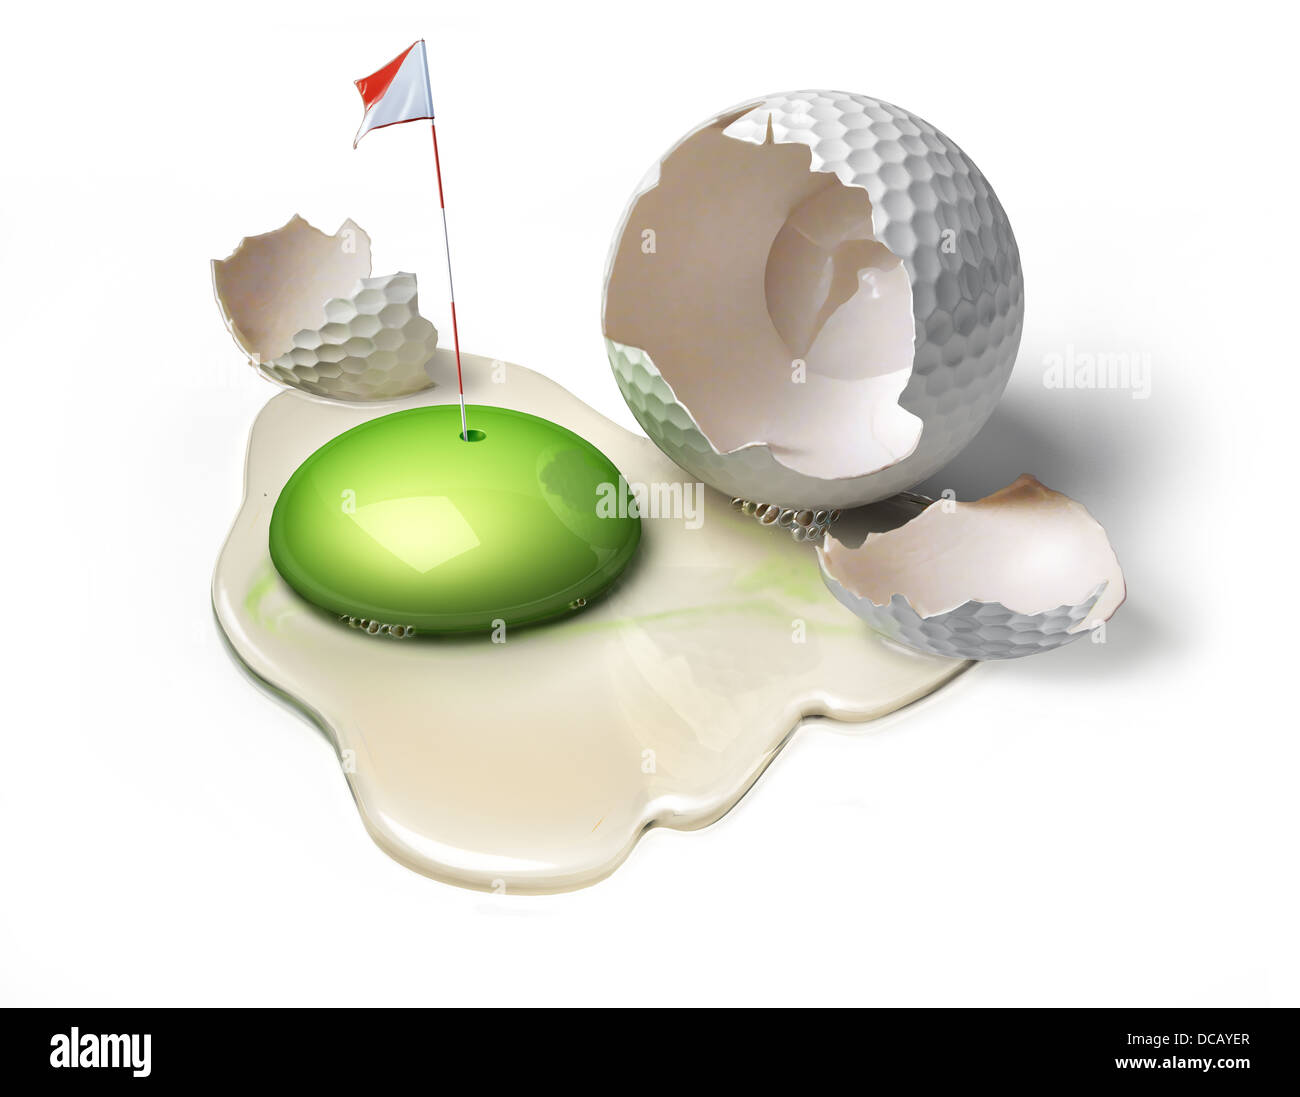 Golfball als gebrochene Ei mit grünen Eigelb, repräsentieren das Spielfeld mit Loch und Fahne. Stockfoto